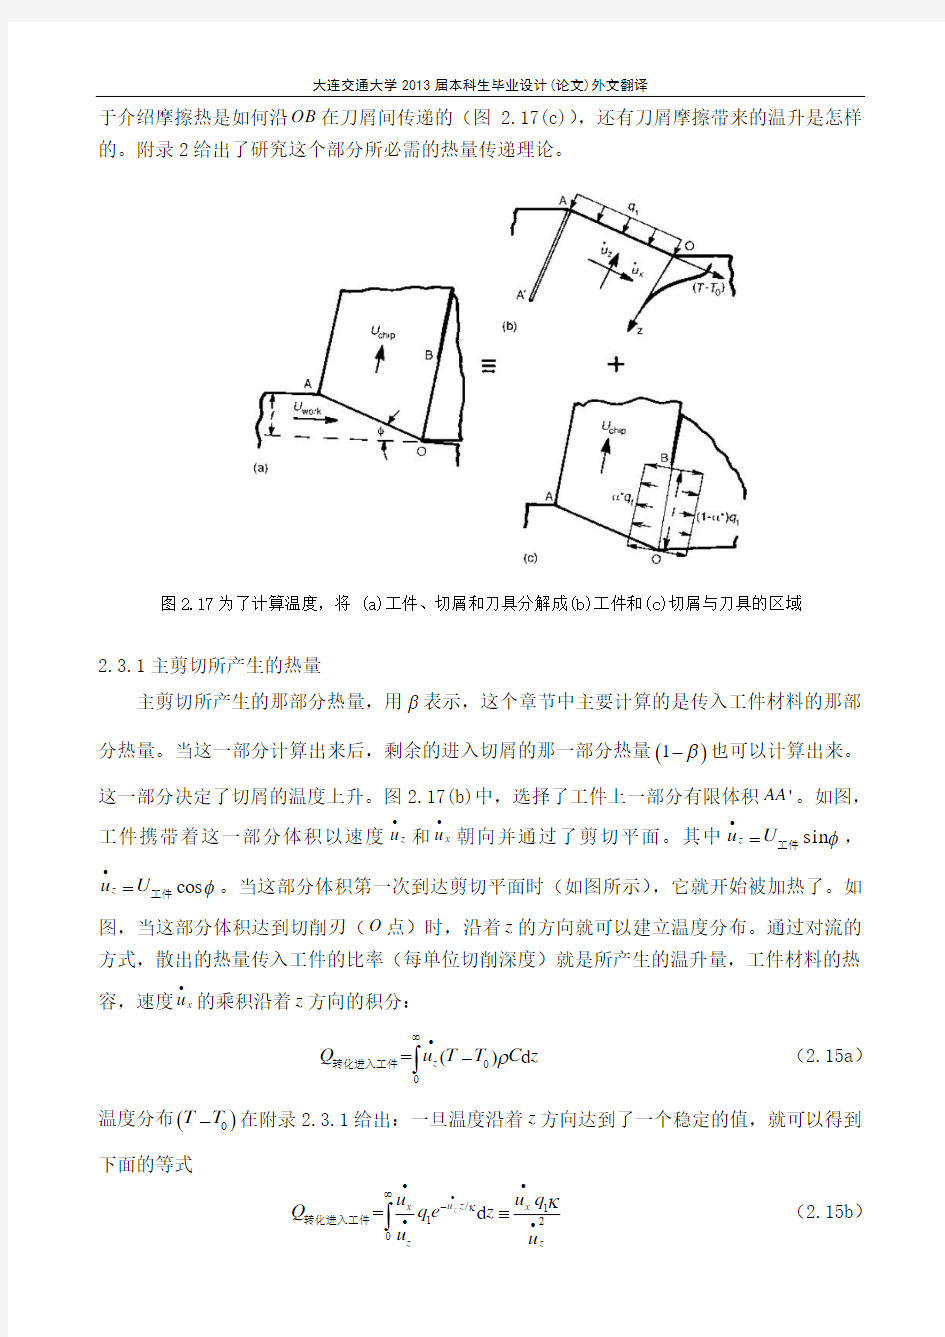 本科机械工程专业毕业设计外文翻译(中文部分)